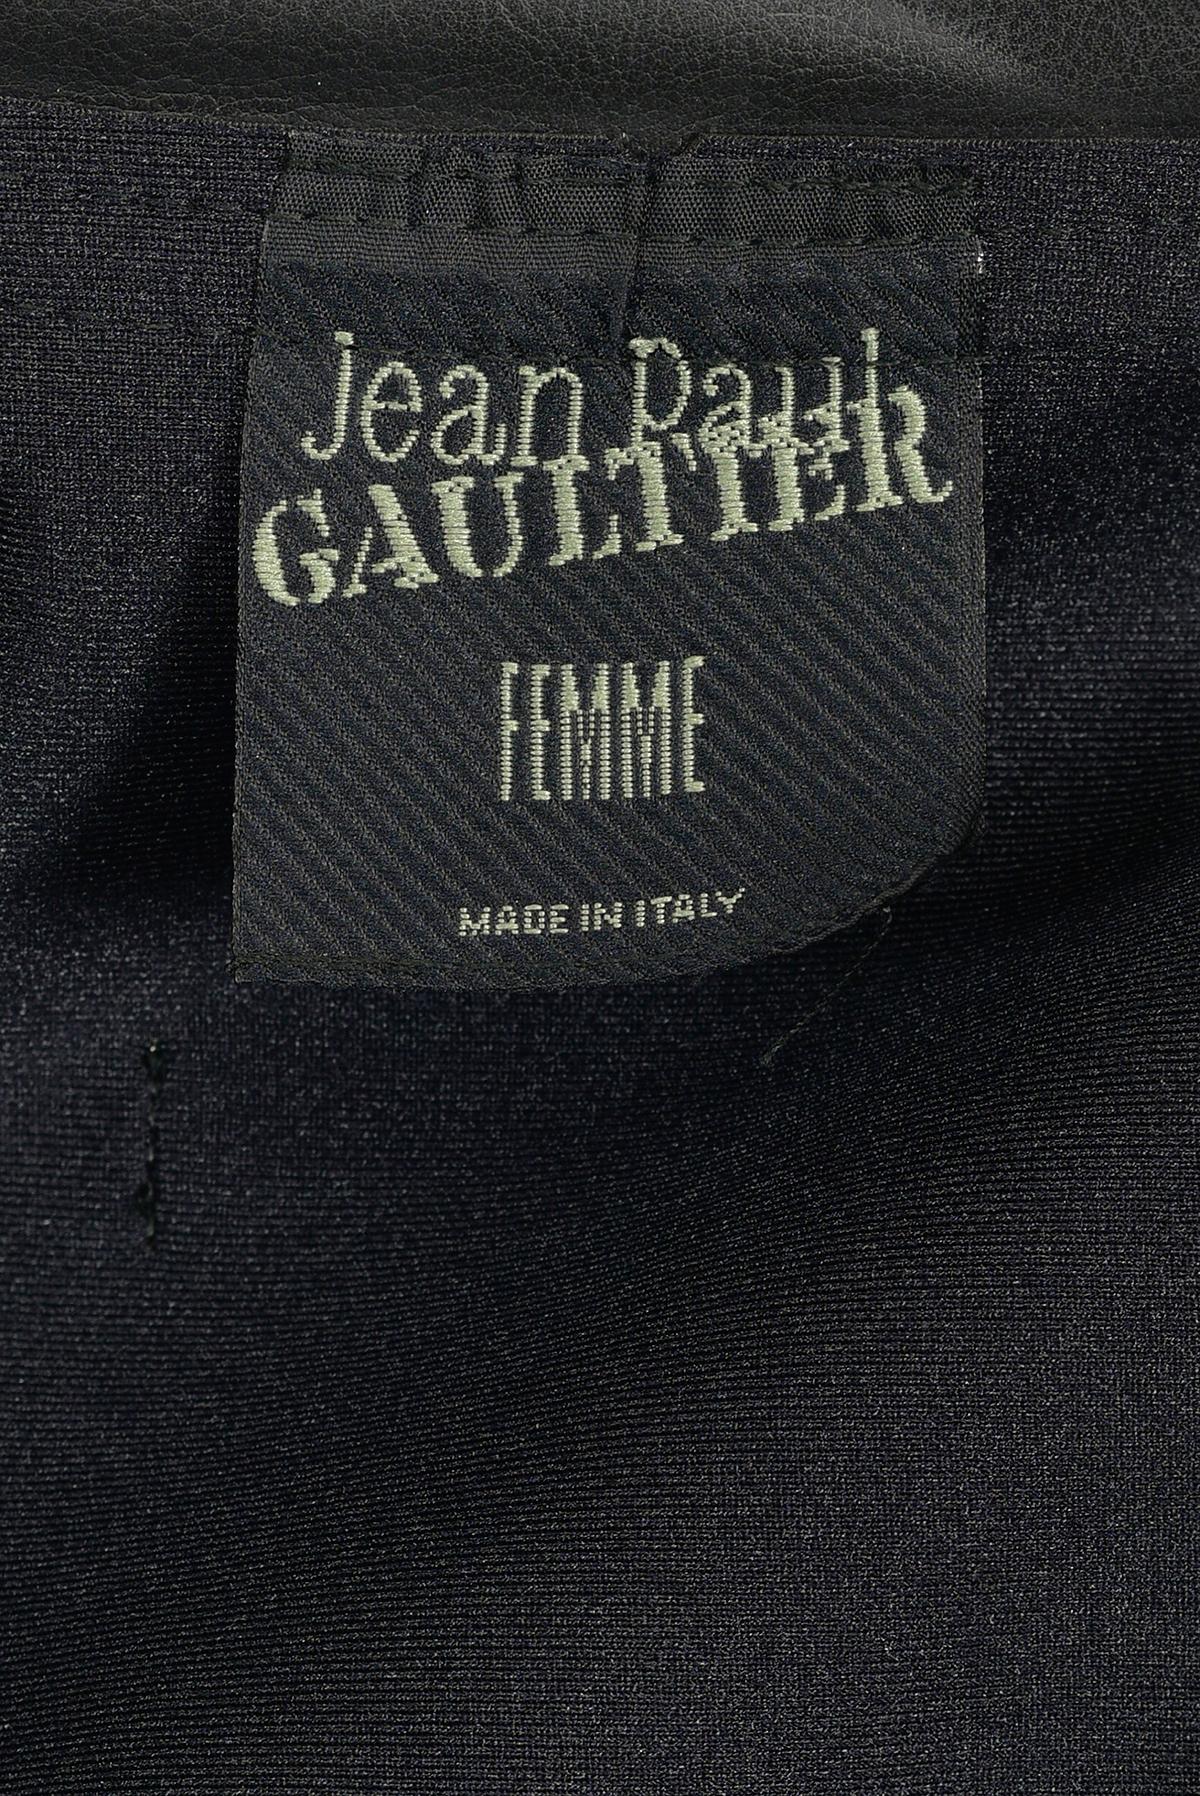 Women's or Men's JEAN PAUL GAULTIER  FW 95 Fake Leather Bustier Jacket